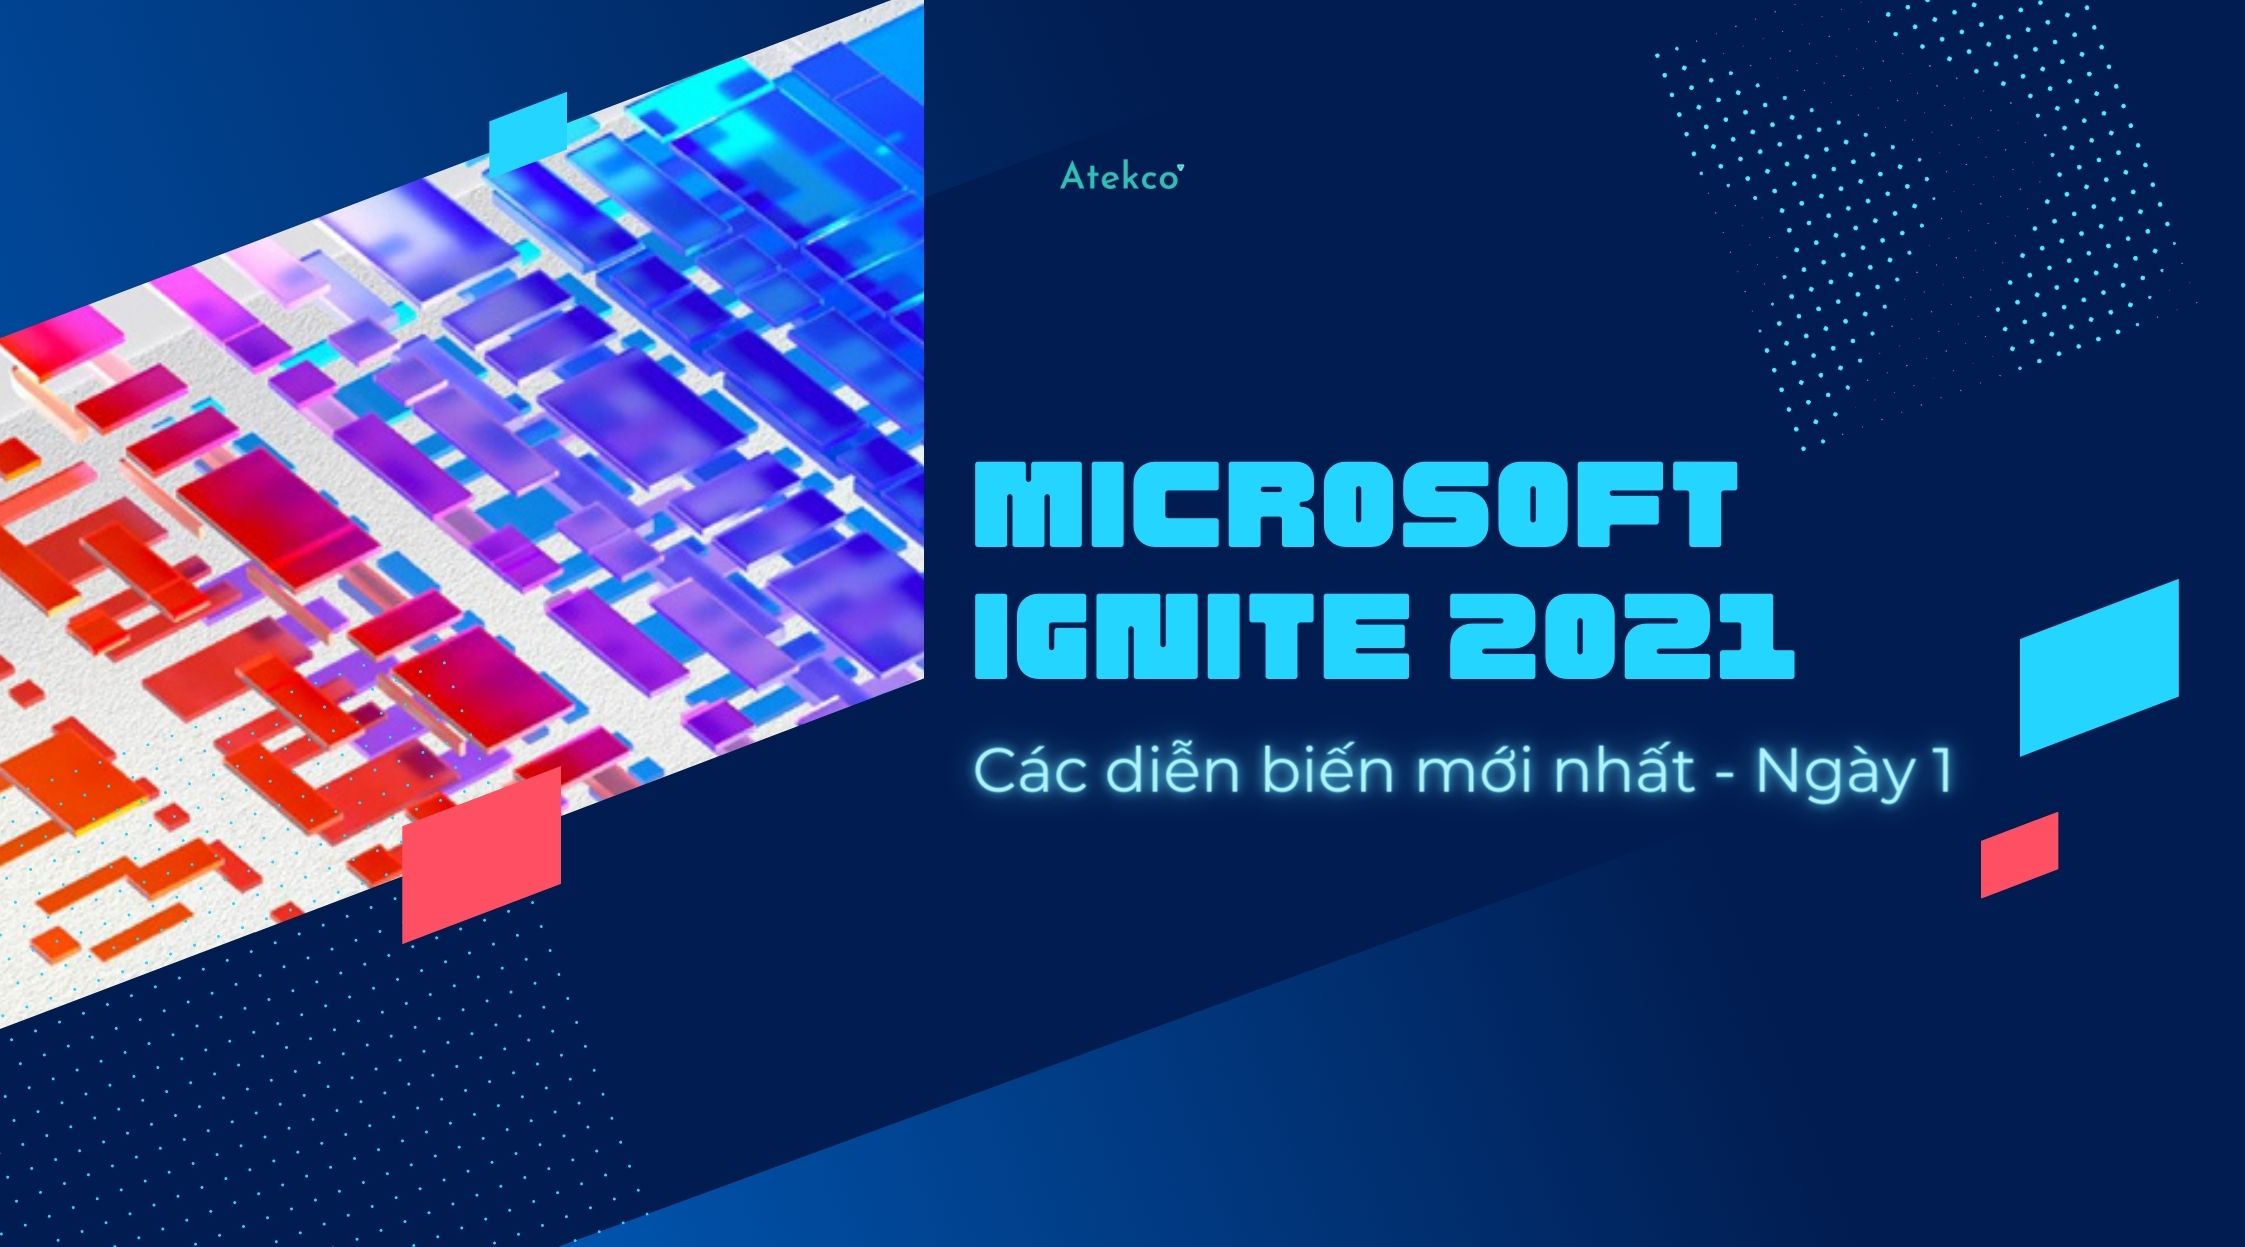 Tóm tắt nhanh diễn biến mới nhất tại Microsoft Ignite 2021 Atekco